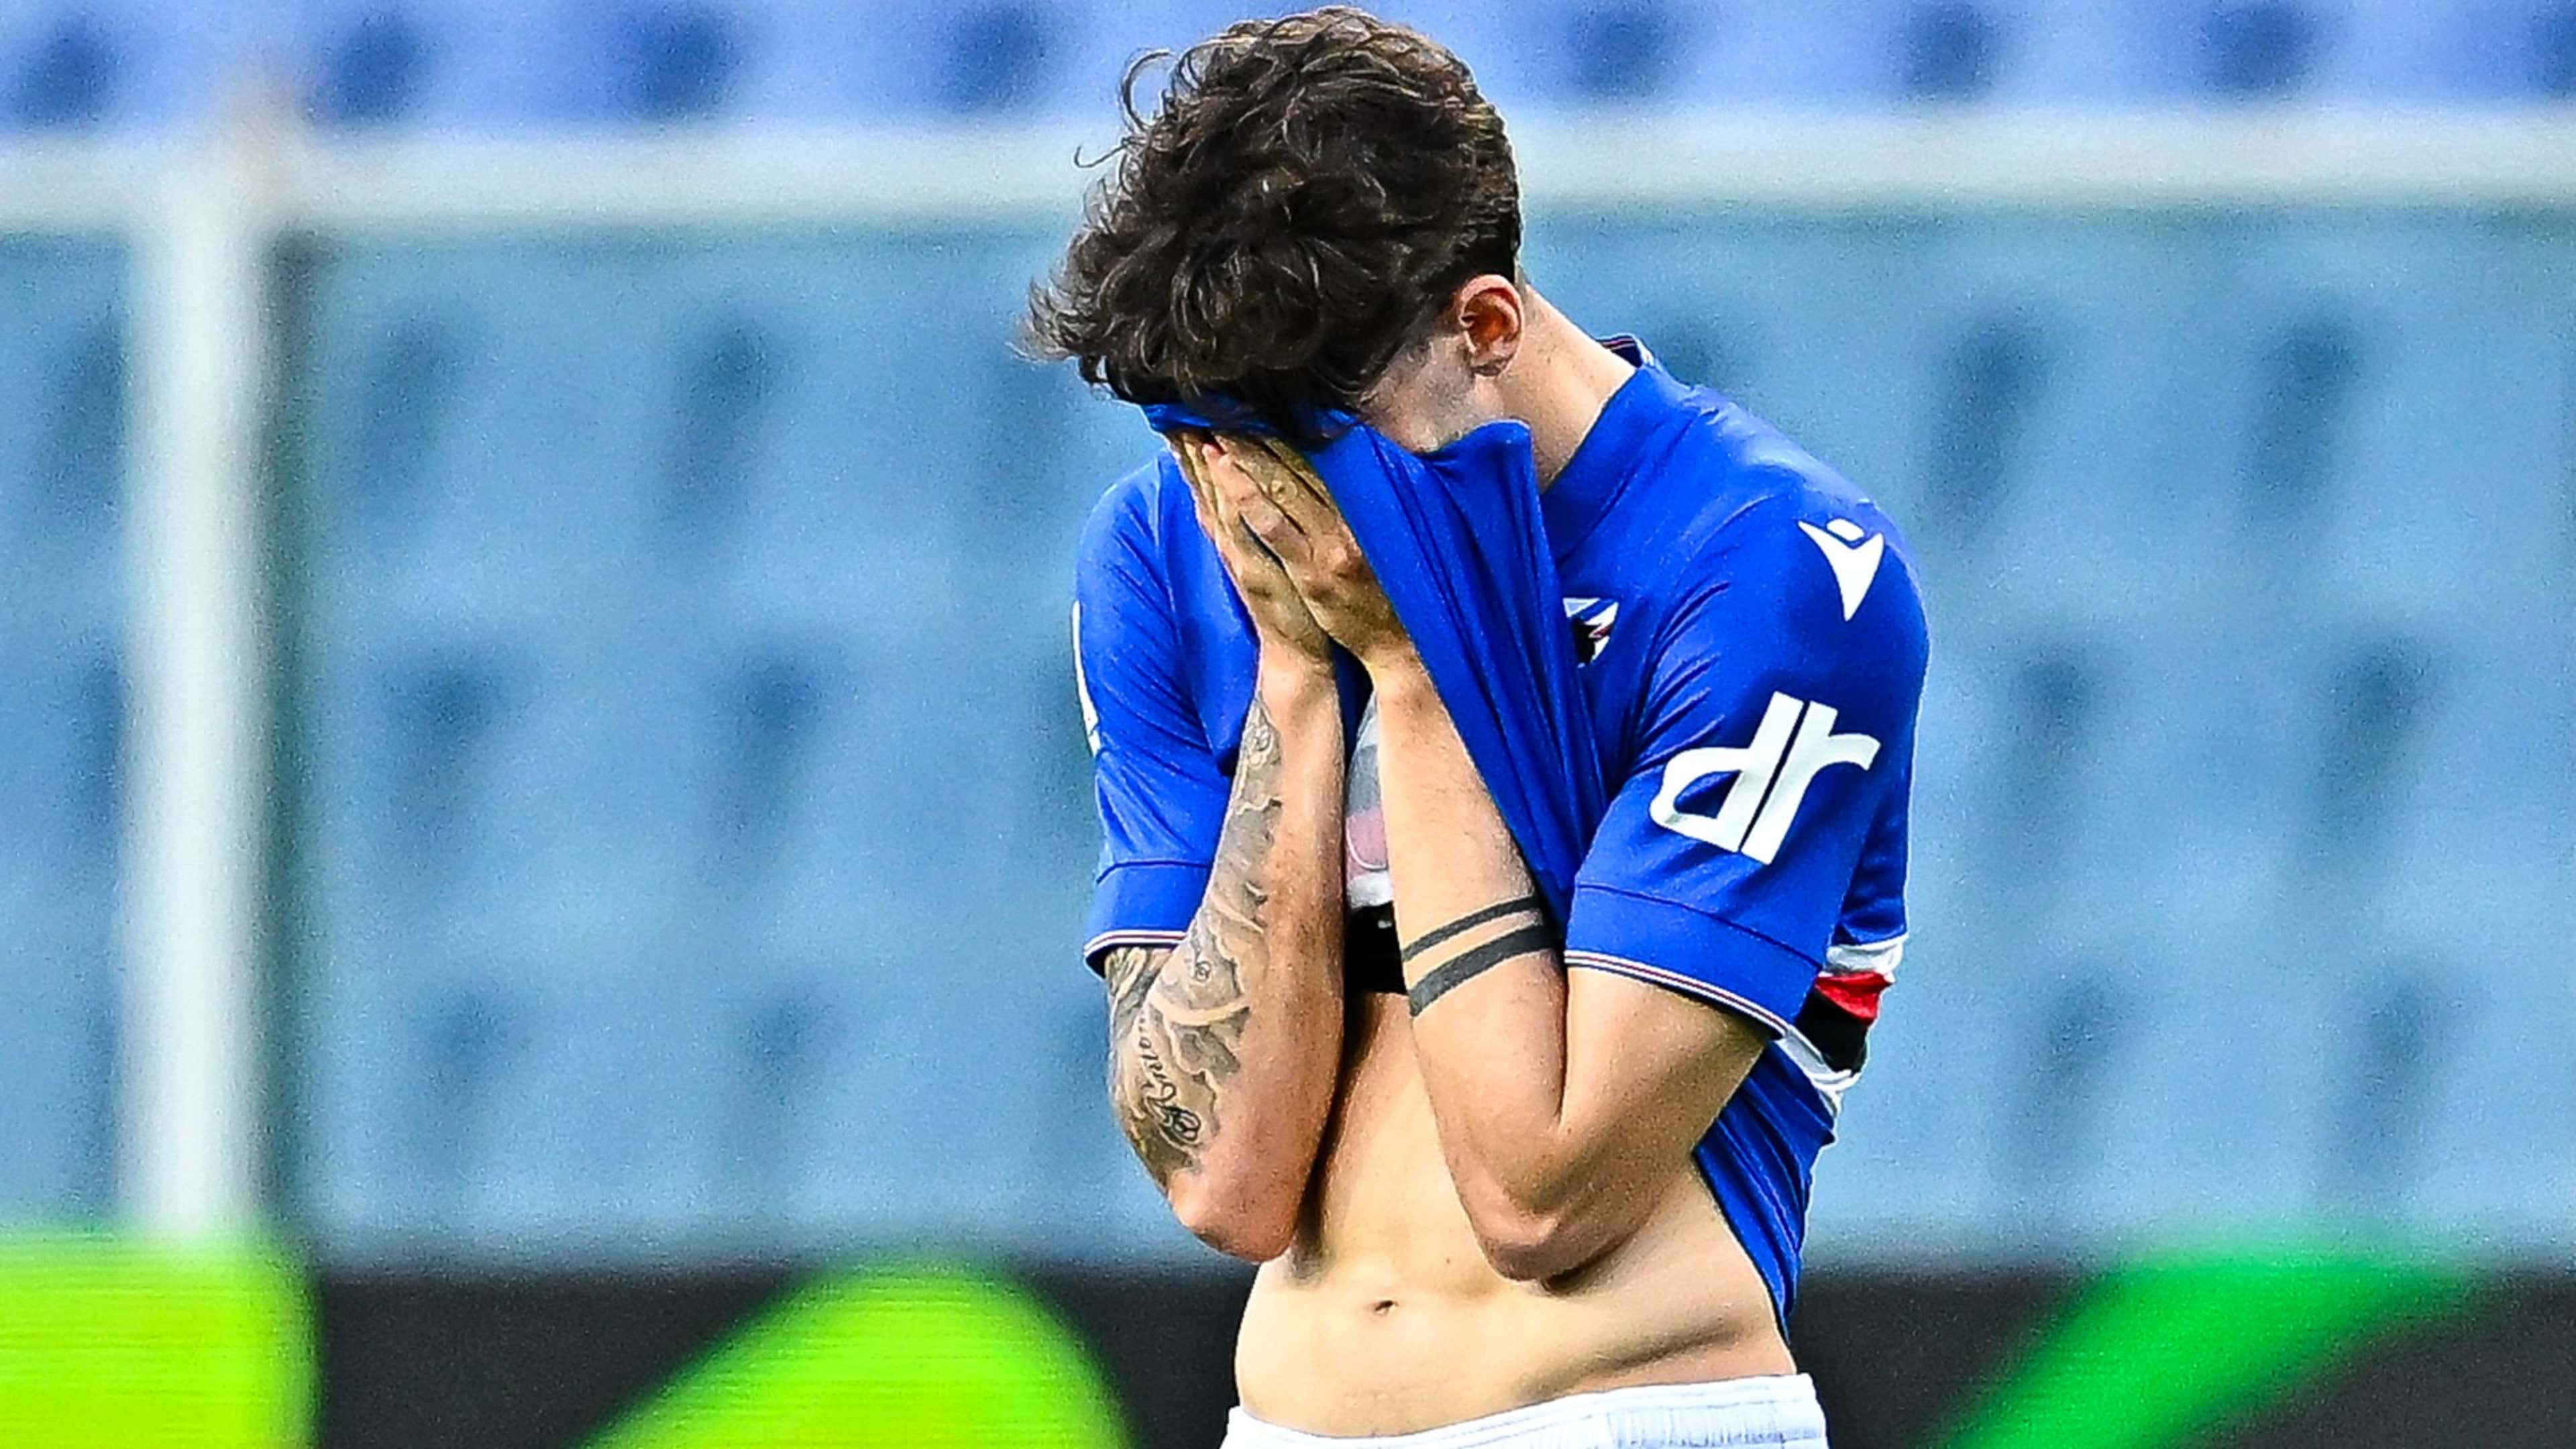 Sampdoria começará Série B negativada por atrasar dívidas